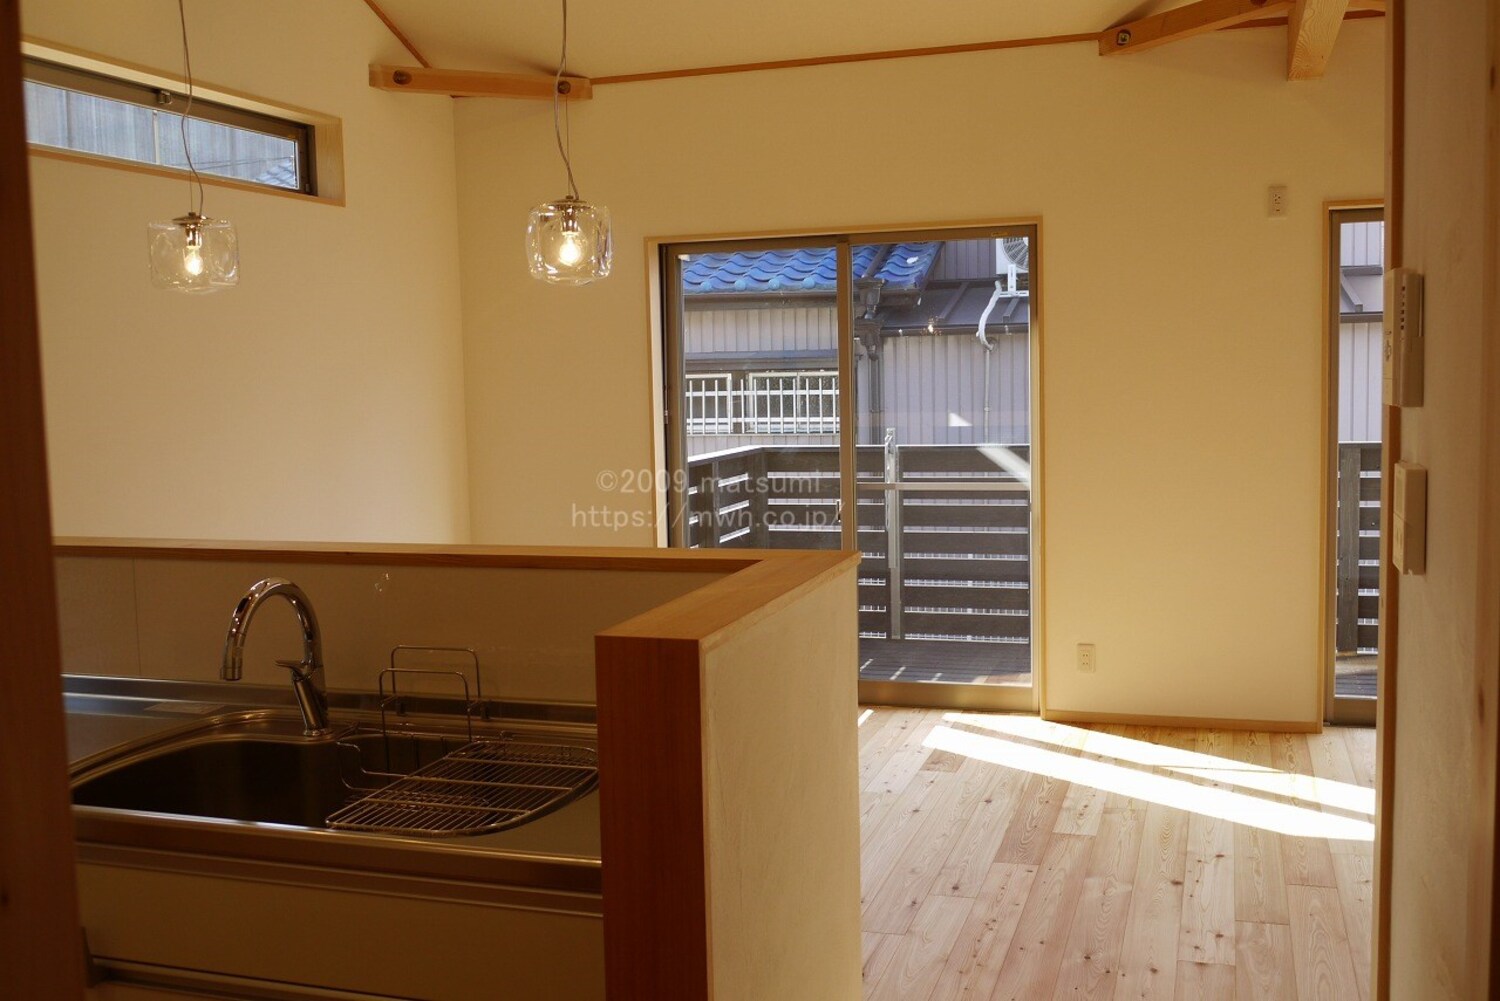 【注文住宅】TERANISHI NEW　HOUSE『マツミ大工の寺西君が自宅を建てました』